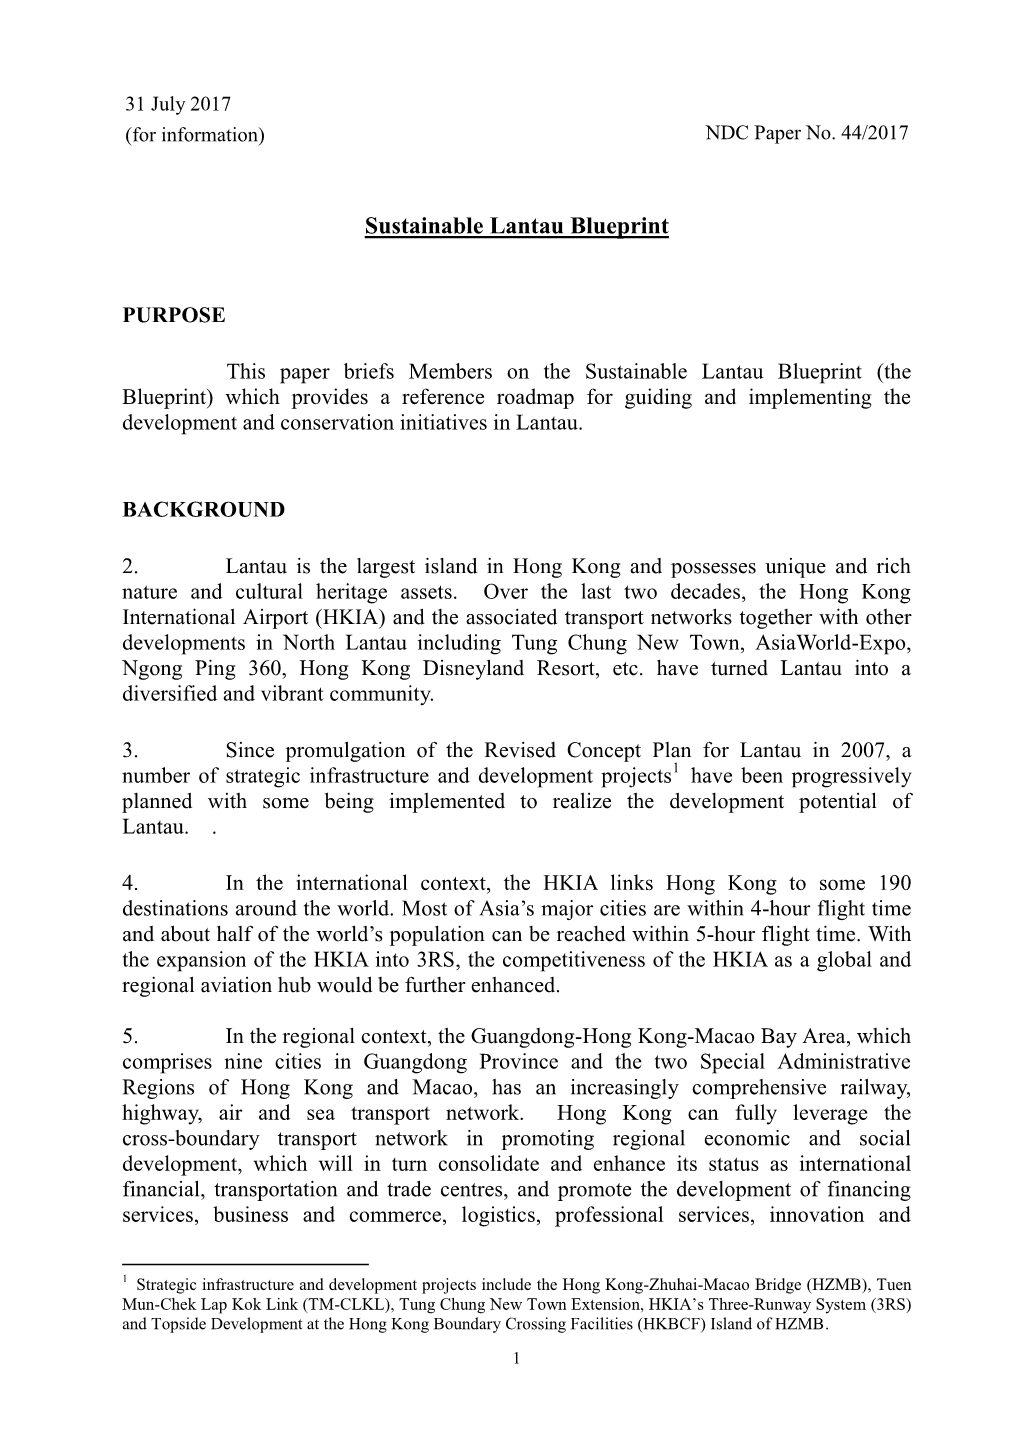 Sustainable Lantau Blueprint